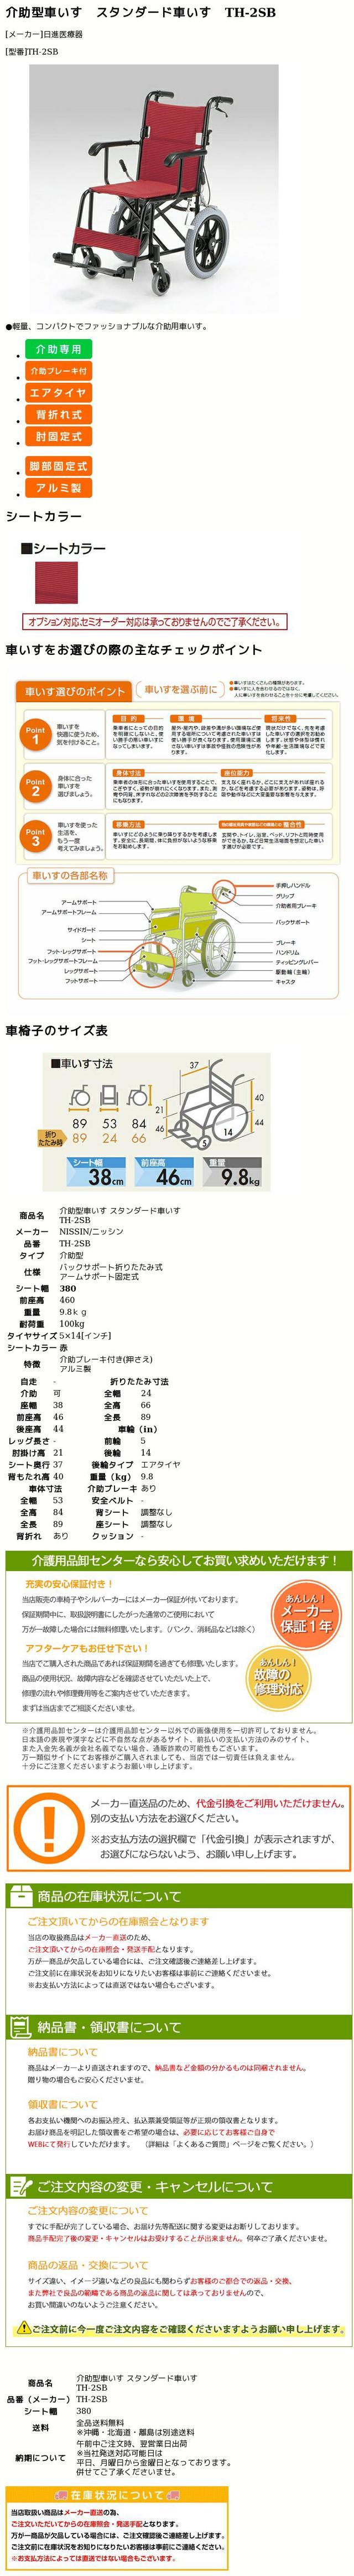 95円 【67%OFF!】 湯たんぽ別売り オンリーワン湯たんぽ用口栓 1個 01-5290-02